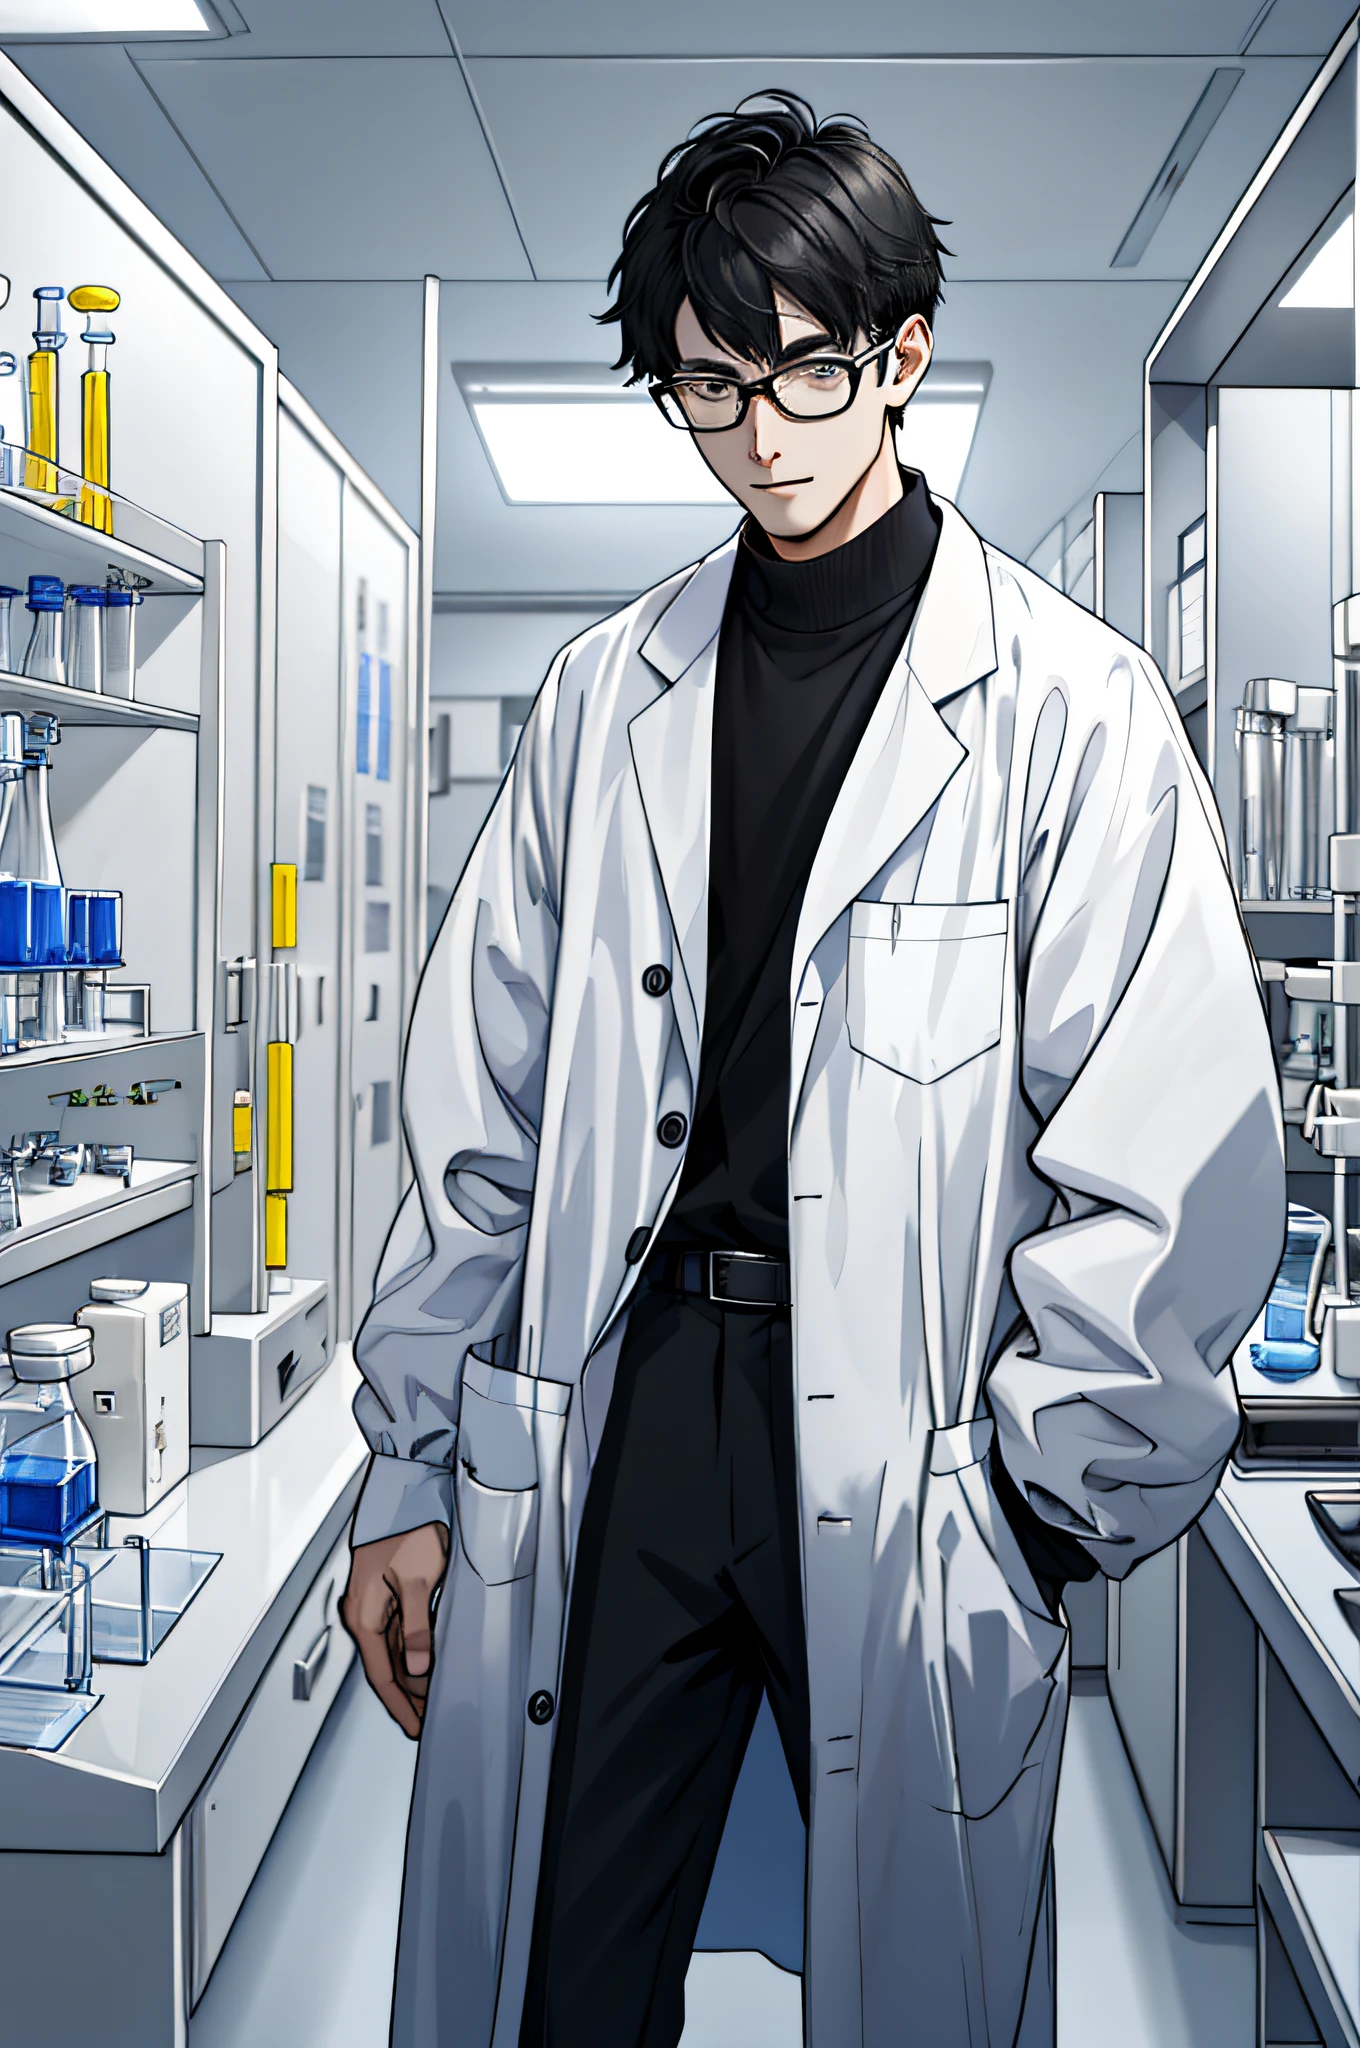 "Zeichne einen großen jungen Physiker，Tragen Sie einen Laborkittel，stand in einem Labor，Fokus auf wissenschaftliche Experimente mit Experimentierflaschen。"